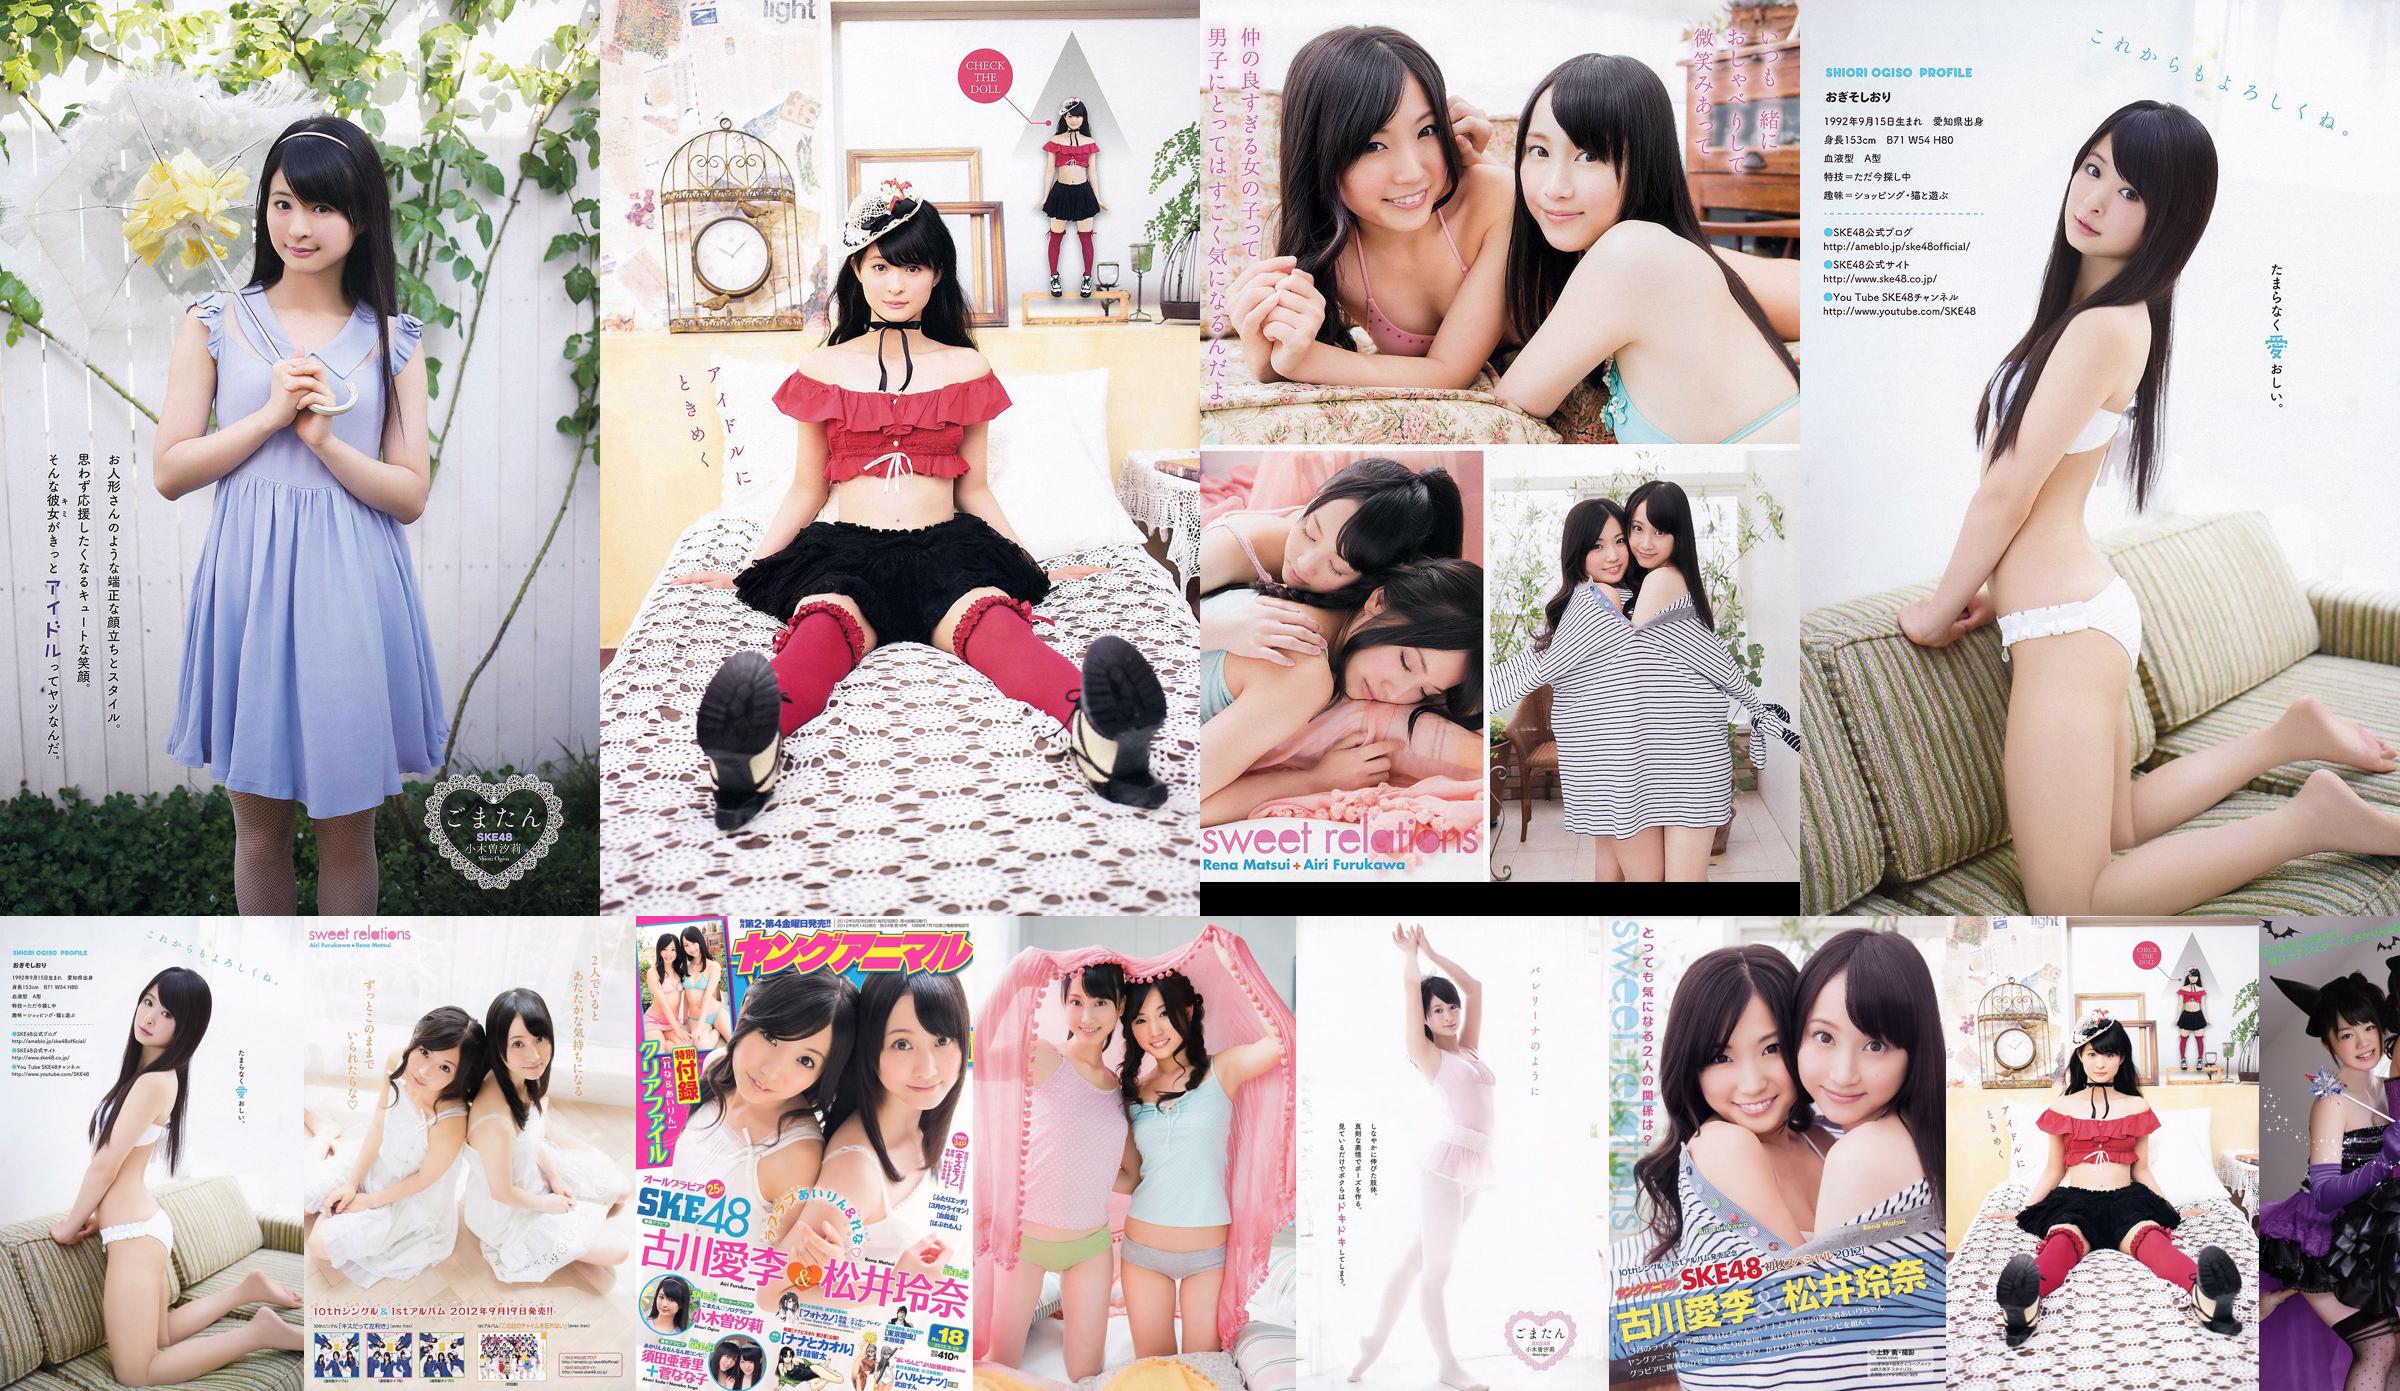 Ai Li Furukawa, Rena Matsui, Sasa Ogi, Aikari Suda [Animal joven] 2012 No.18 Photo Magazine No.30bd5b Página 3